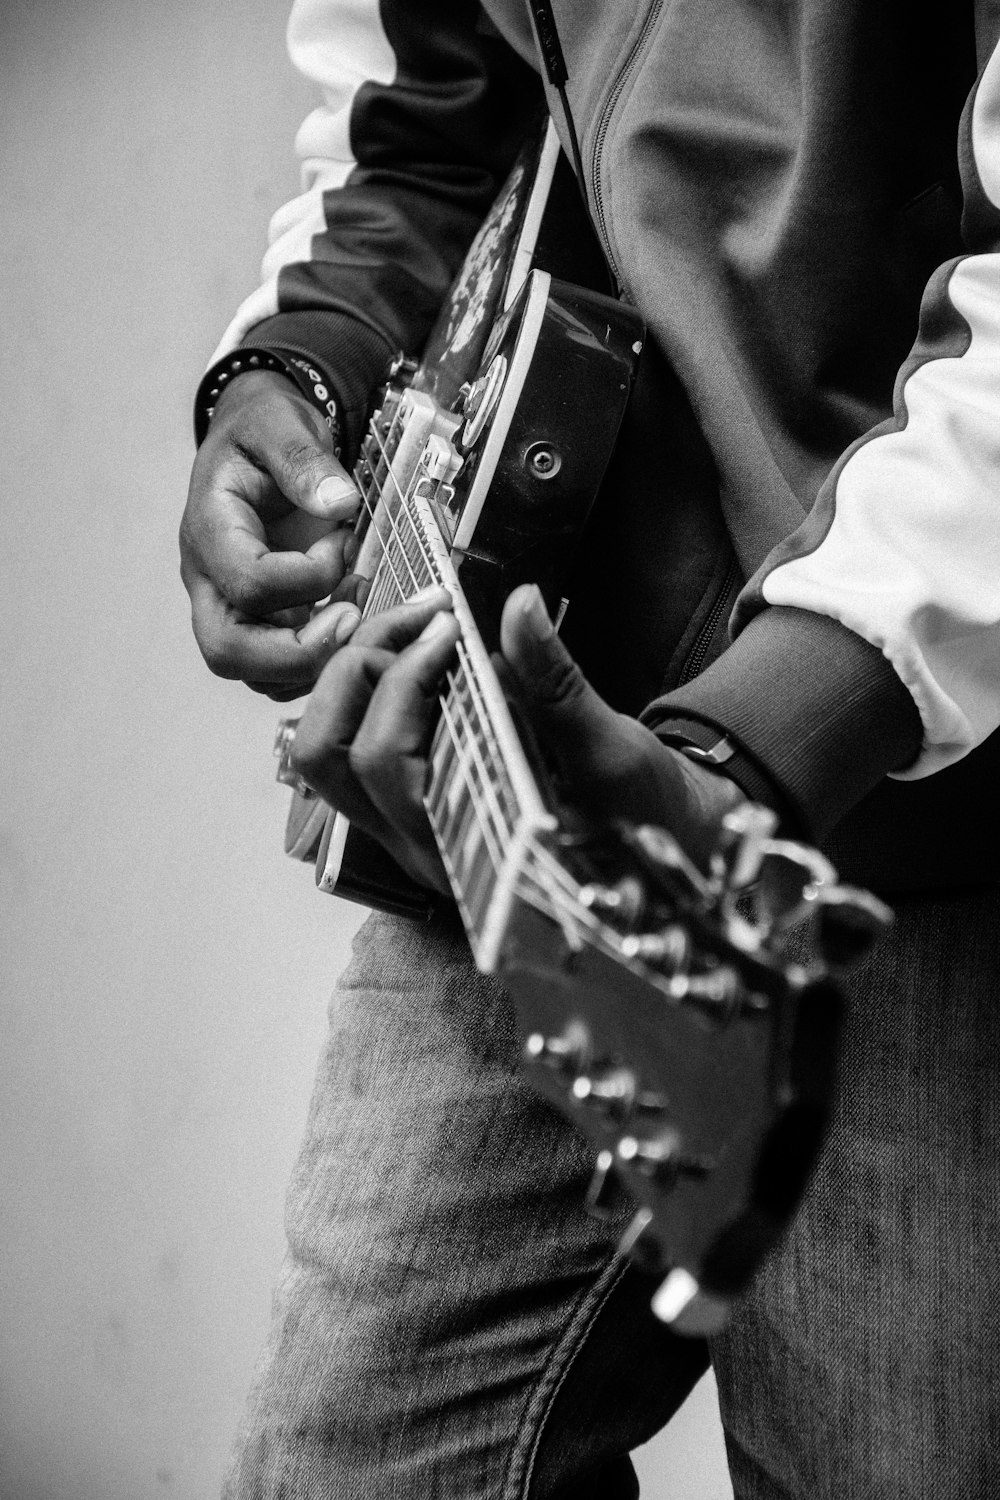 グレースケール写真でギターを弾く人の写真 Unsplashの無料写真